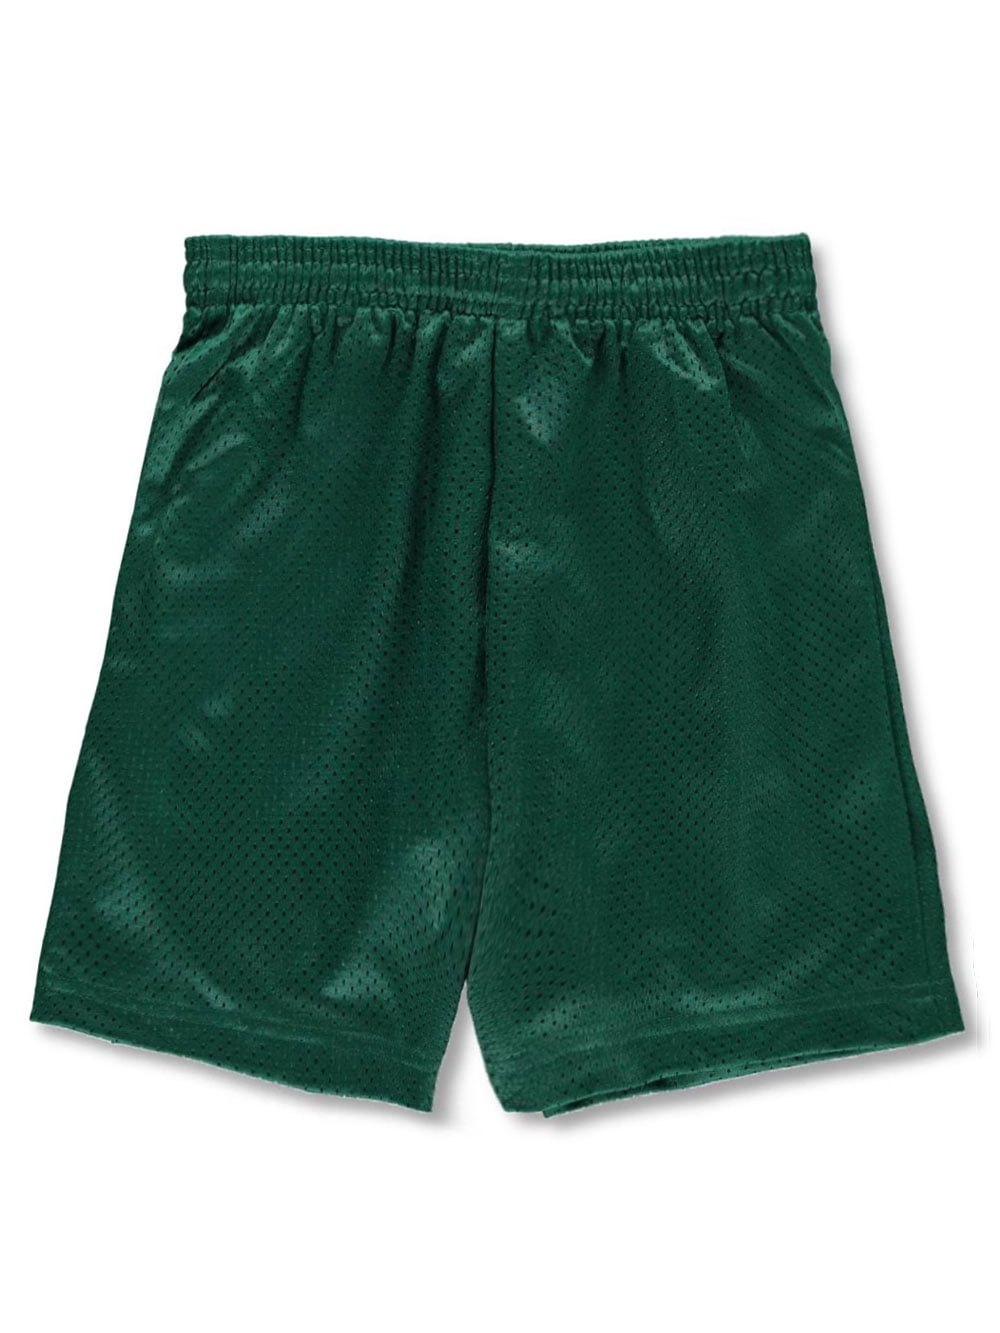 ulv Enrich ar A4 Youth Athletic Shorts - green, xxs/2-3 - Walmart.com